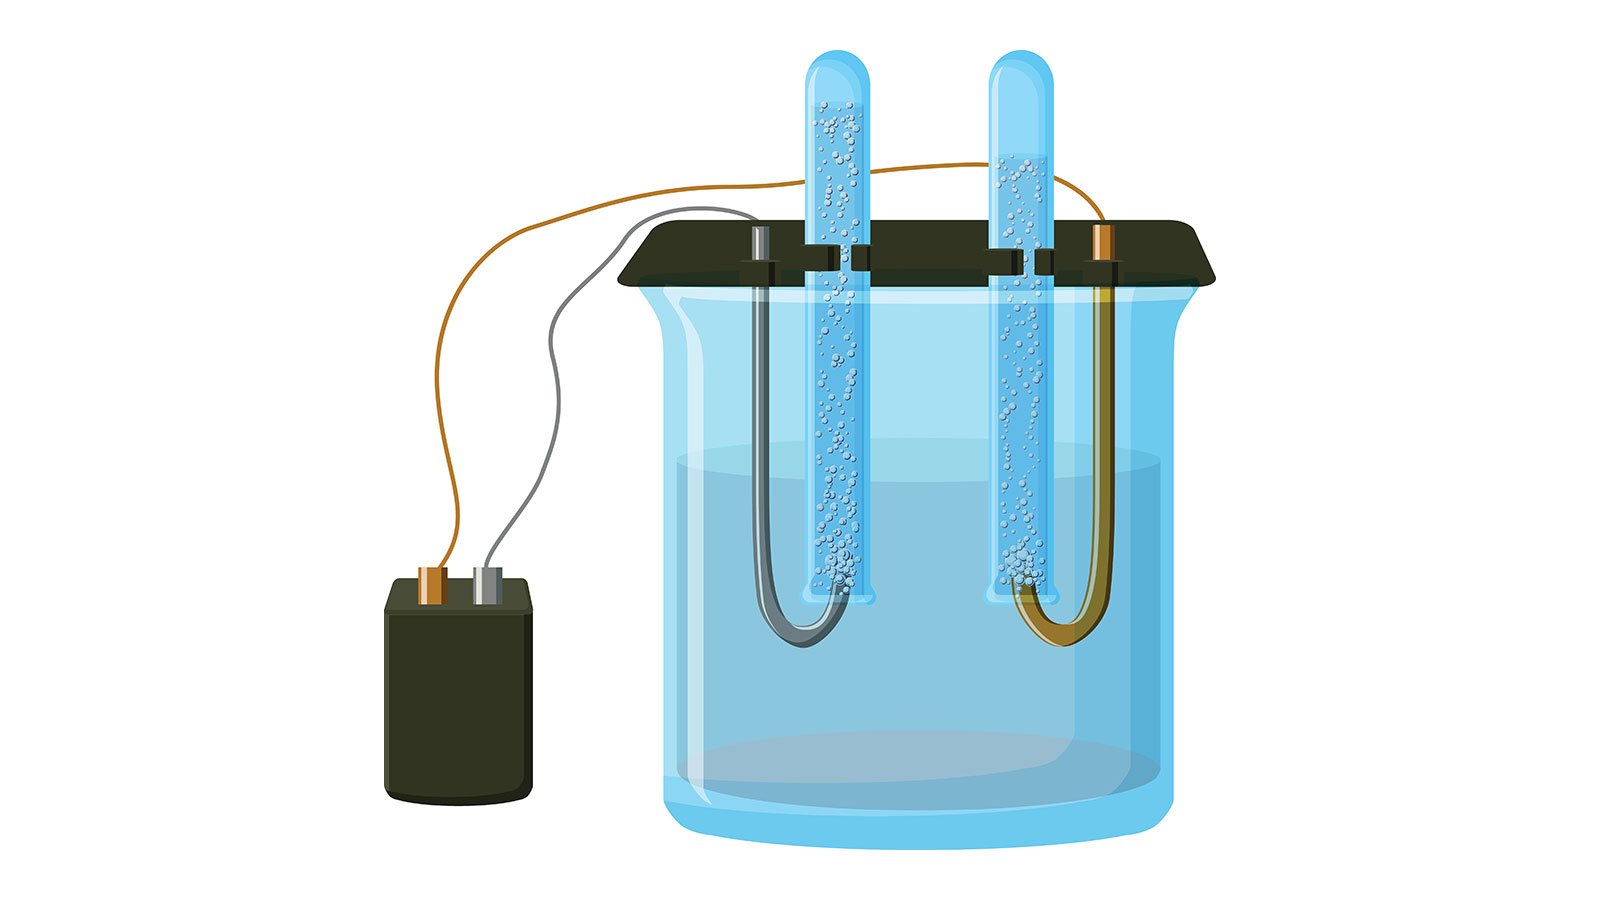 møl Nøjagtig medarbejder Elektrolyse - Forsøg med elektrolyse - Fremstil hydrogen